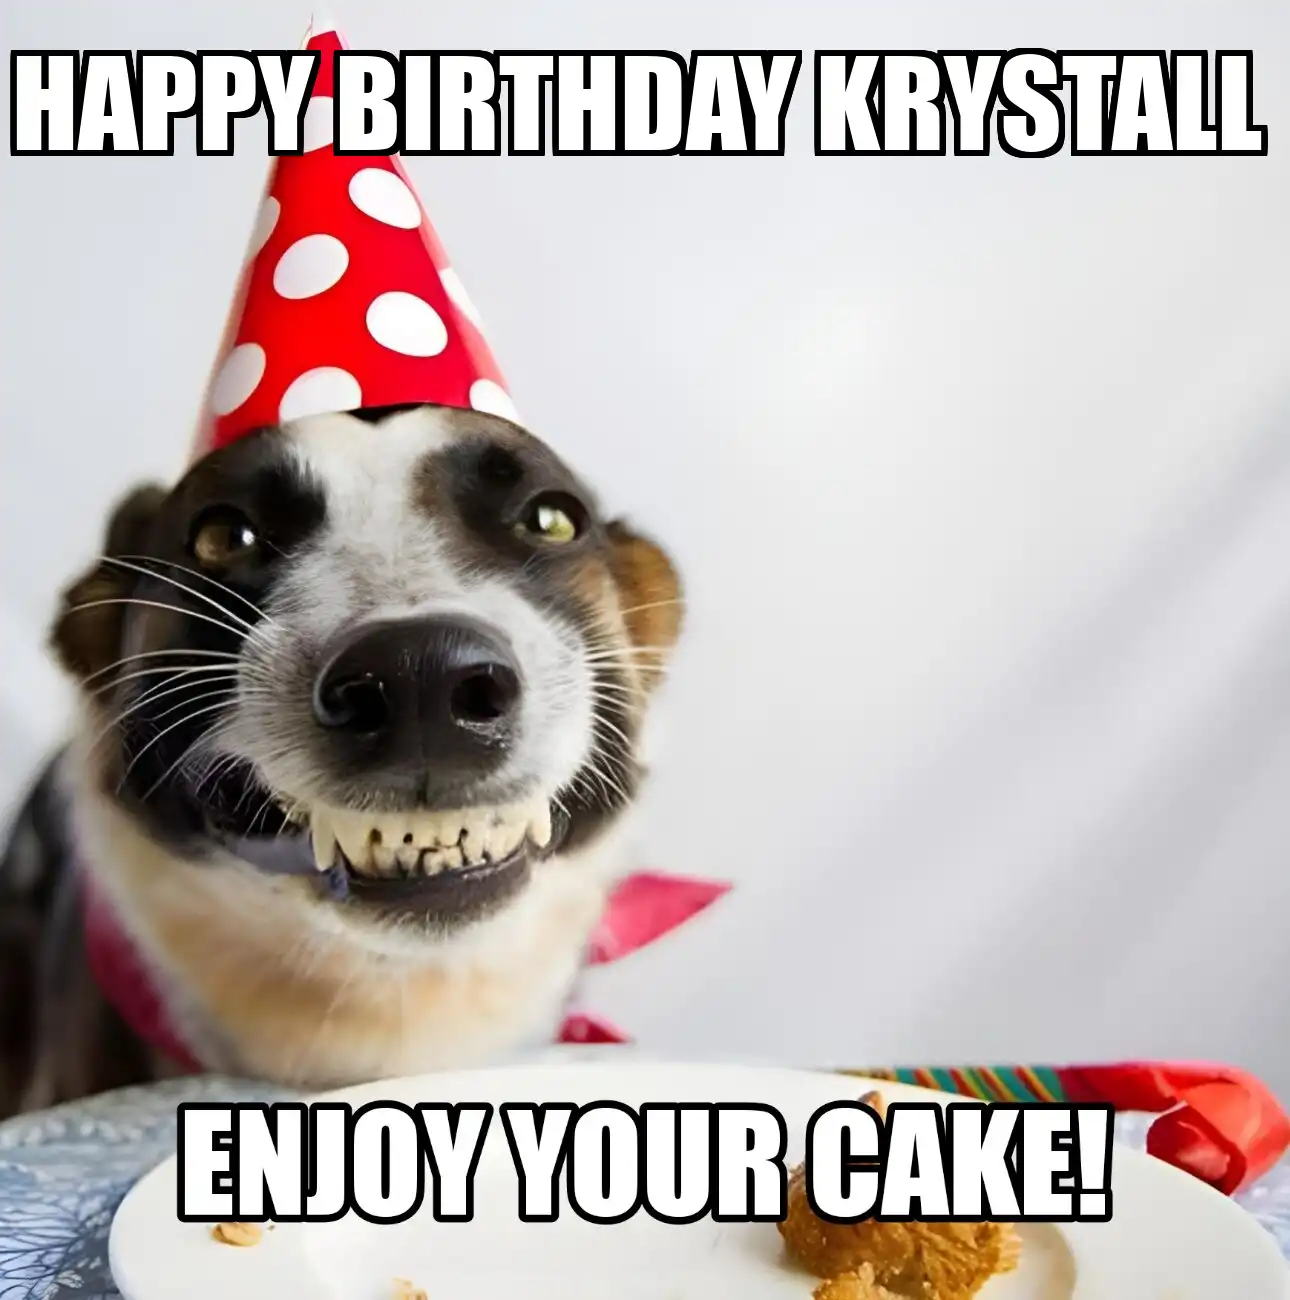 Happy Birthday Krystall Enjoy Your Cake Dog Meme